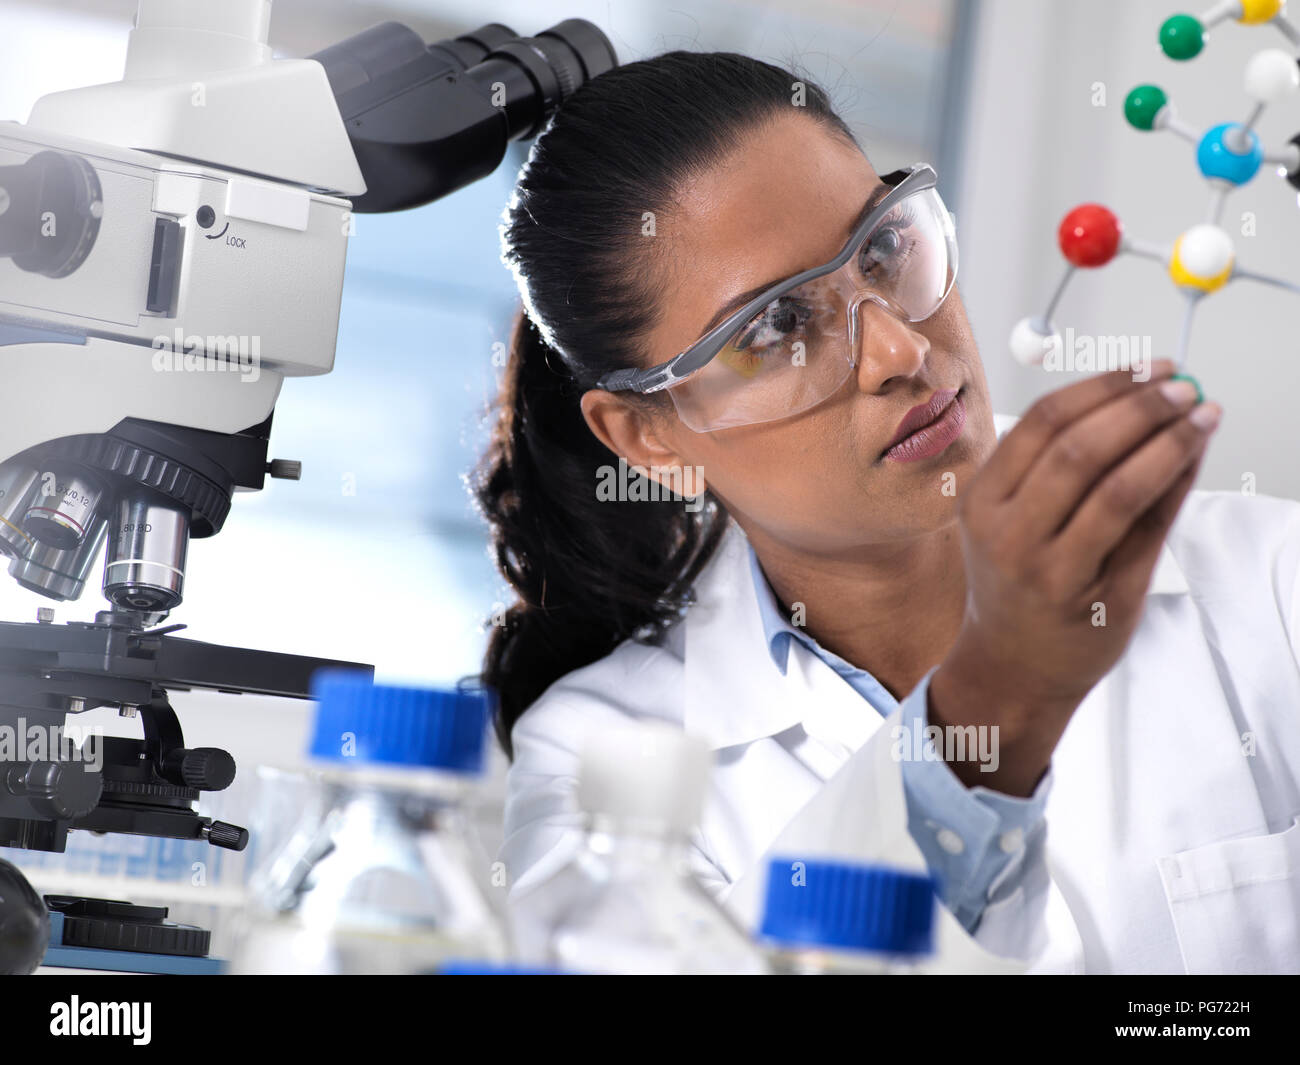 La investigación en biotecnología, investigadora examina una fórmula química utilizando una bola y un stick modelo molecular en el laboratorio. Foto de stock